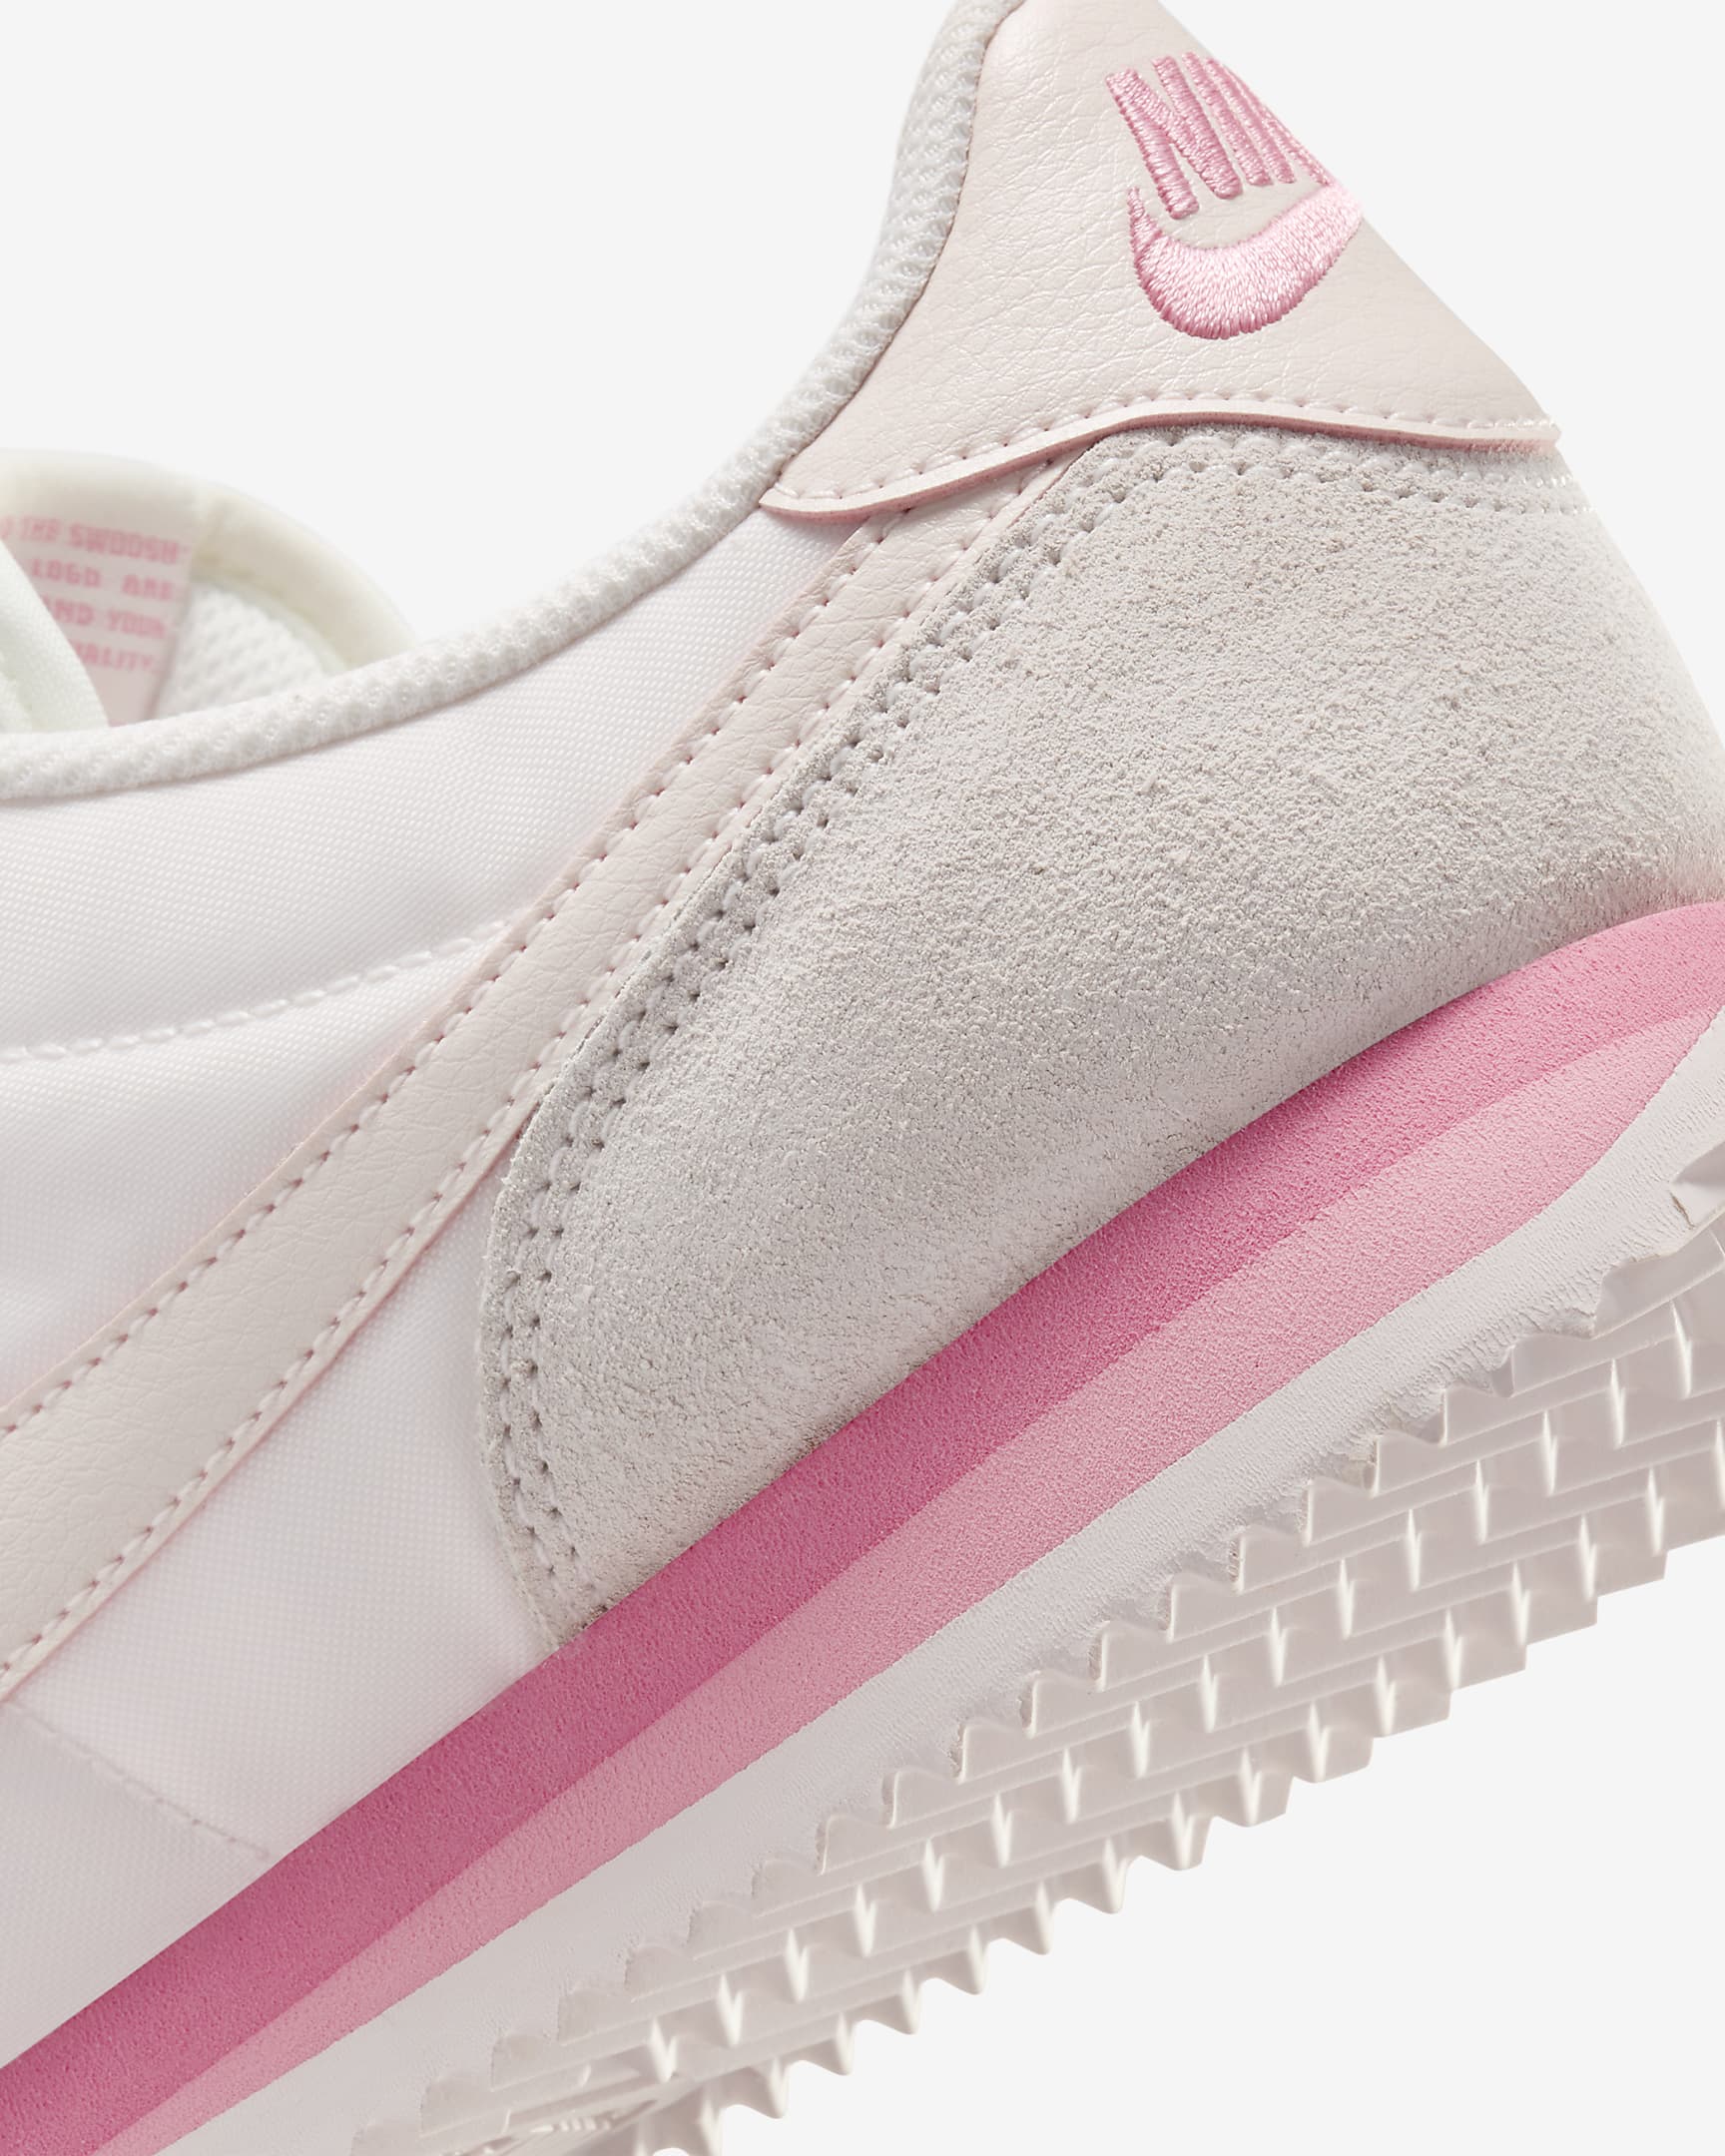 Nike Cortez Textile Women's Shoes - Light Soft Pink/Light Soft Pink/Coral Chalk/Light Soft Pink